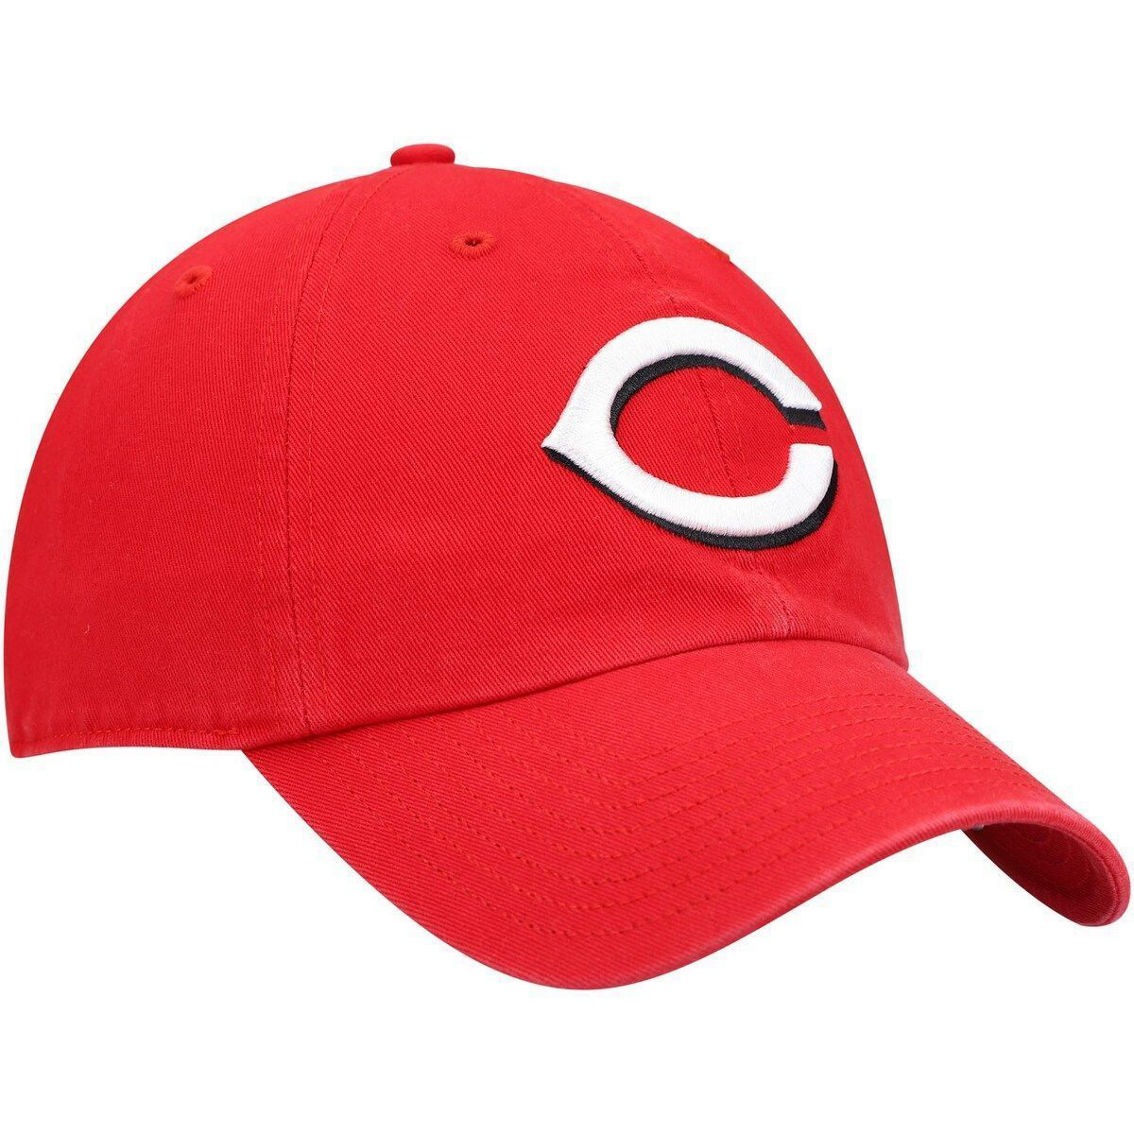 '47 Men's Red Cincinnati Reds Clean Up Adjustable Hat - Image 4 of 4